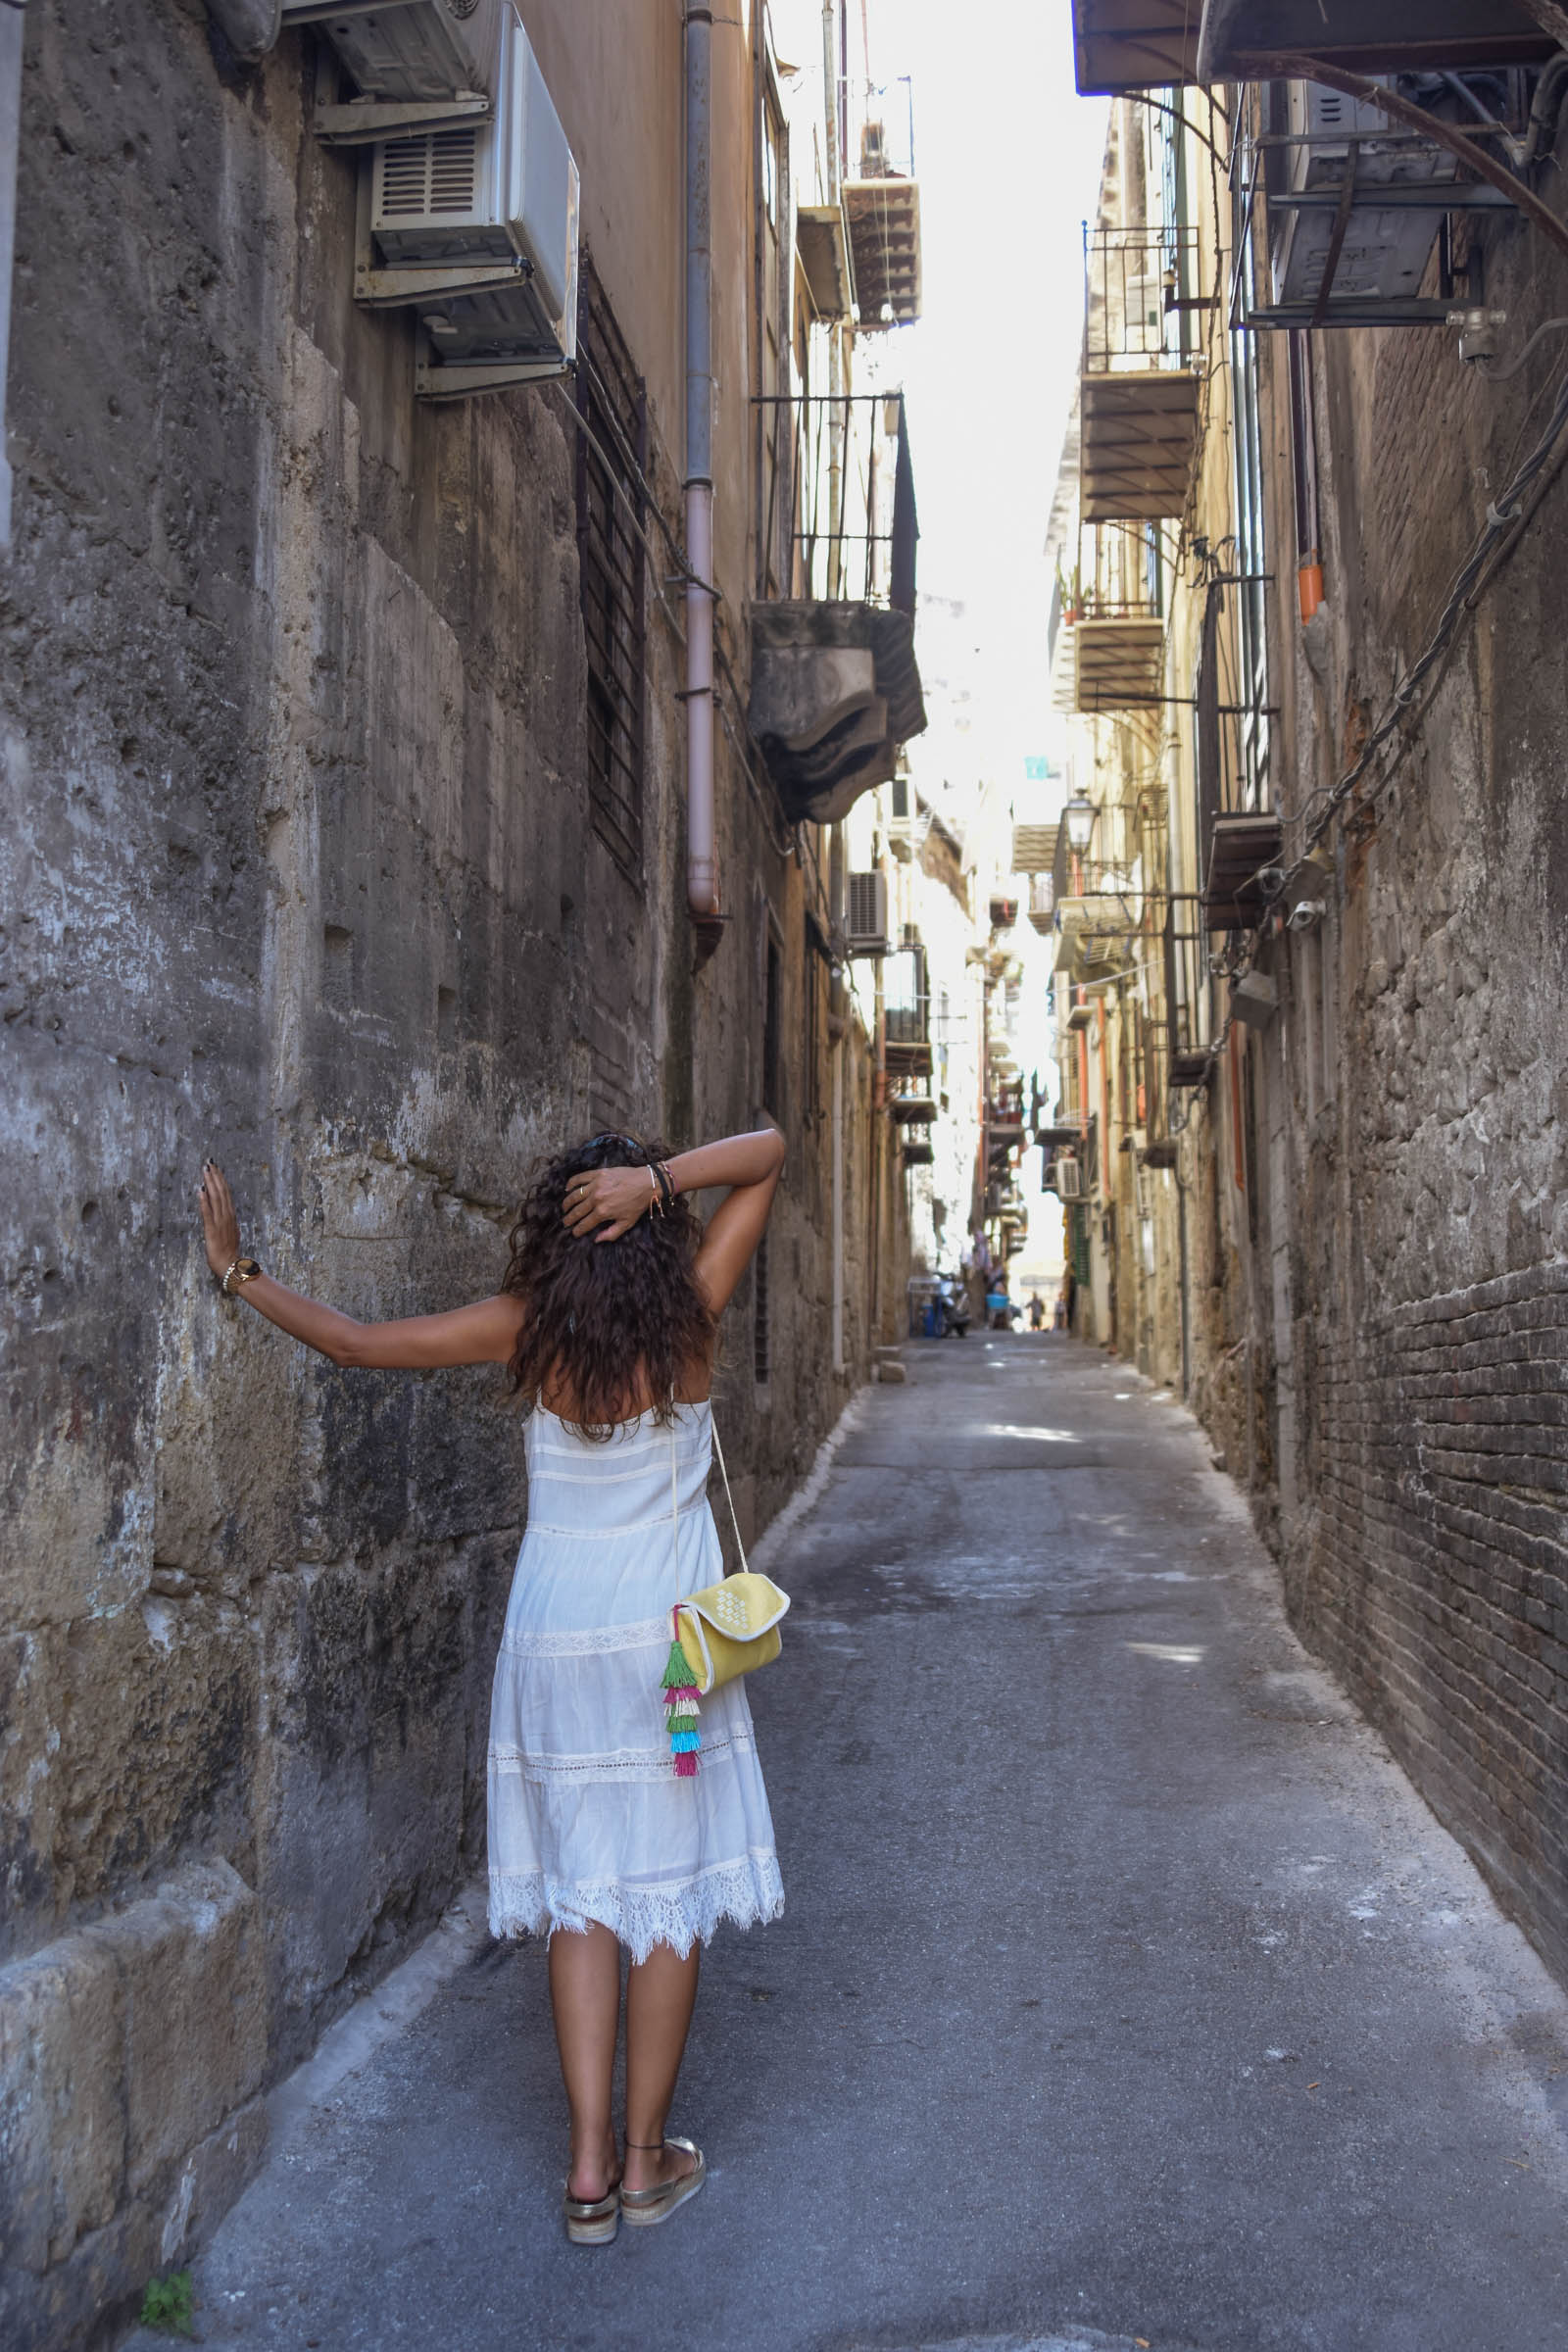 el-blog-de-silvia-rodriguez-lifestyle-travel-blogger-verano-vacaciones-en-palermo-sicilia-sicily-holidays-white-summer-dres